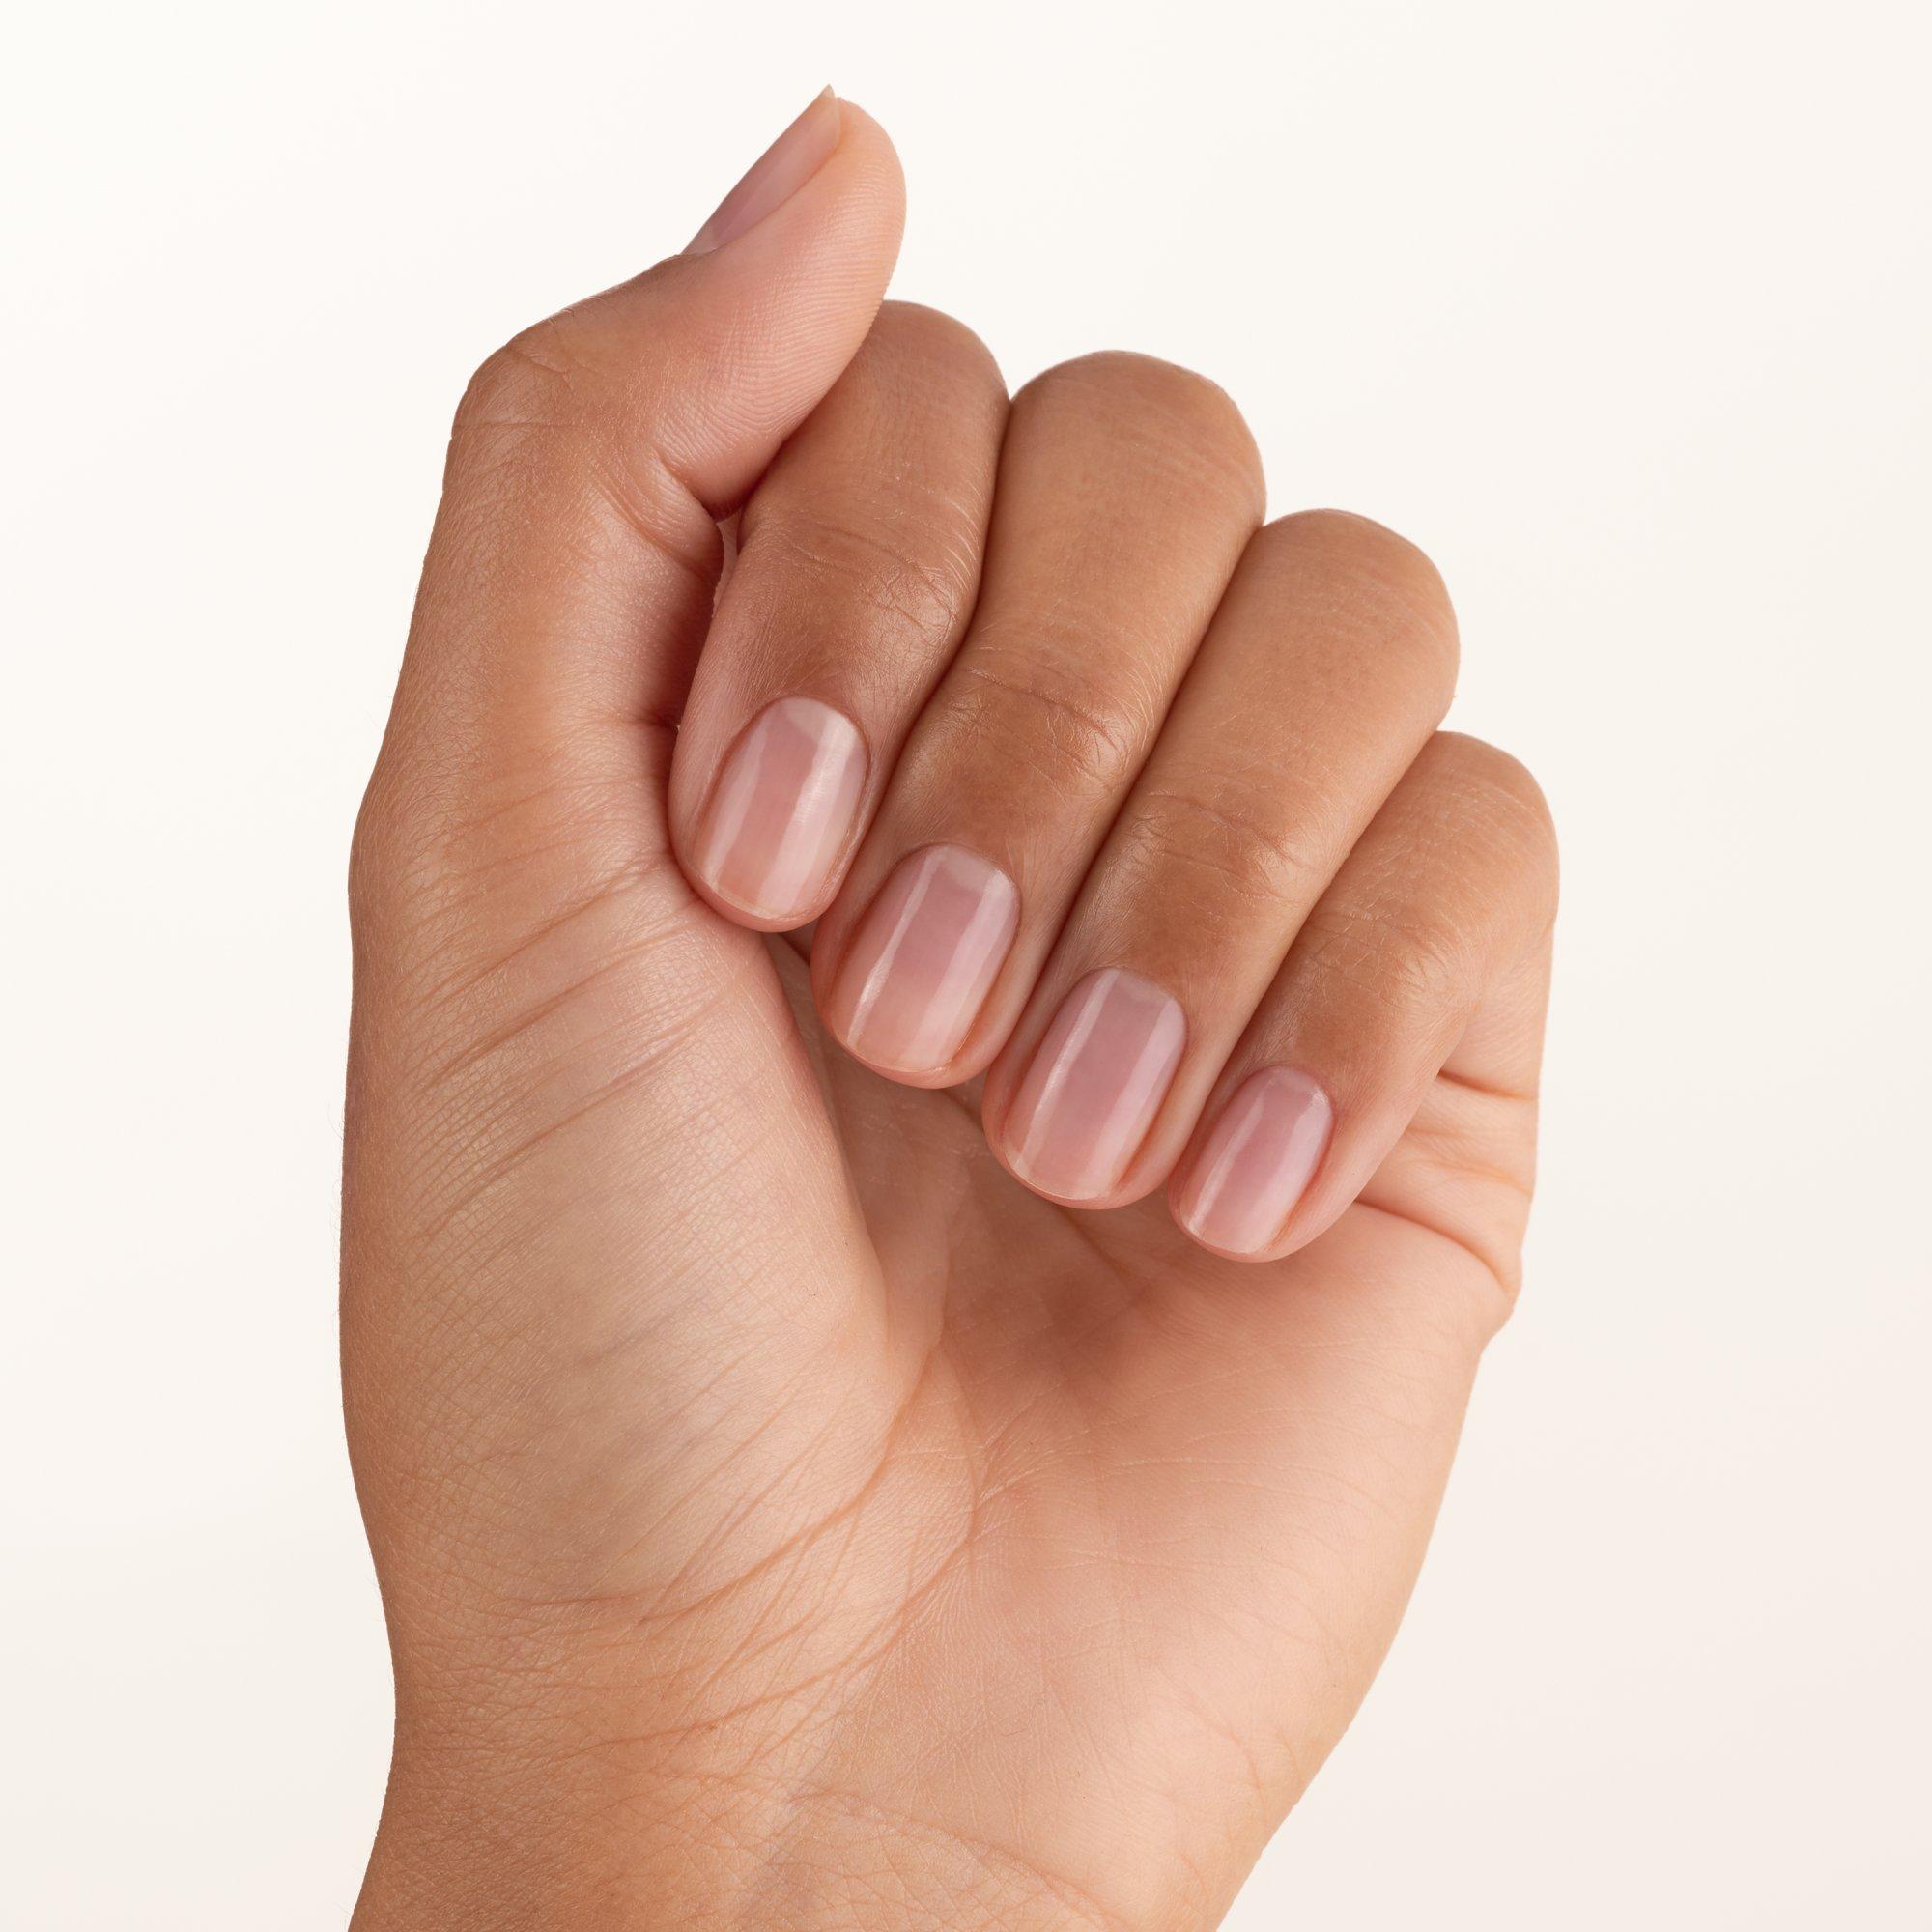 EXTREME NAIL trattamento unghie rinforzante